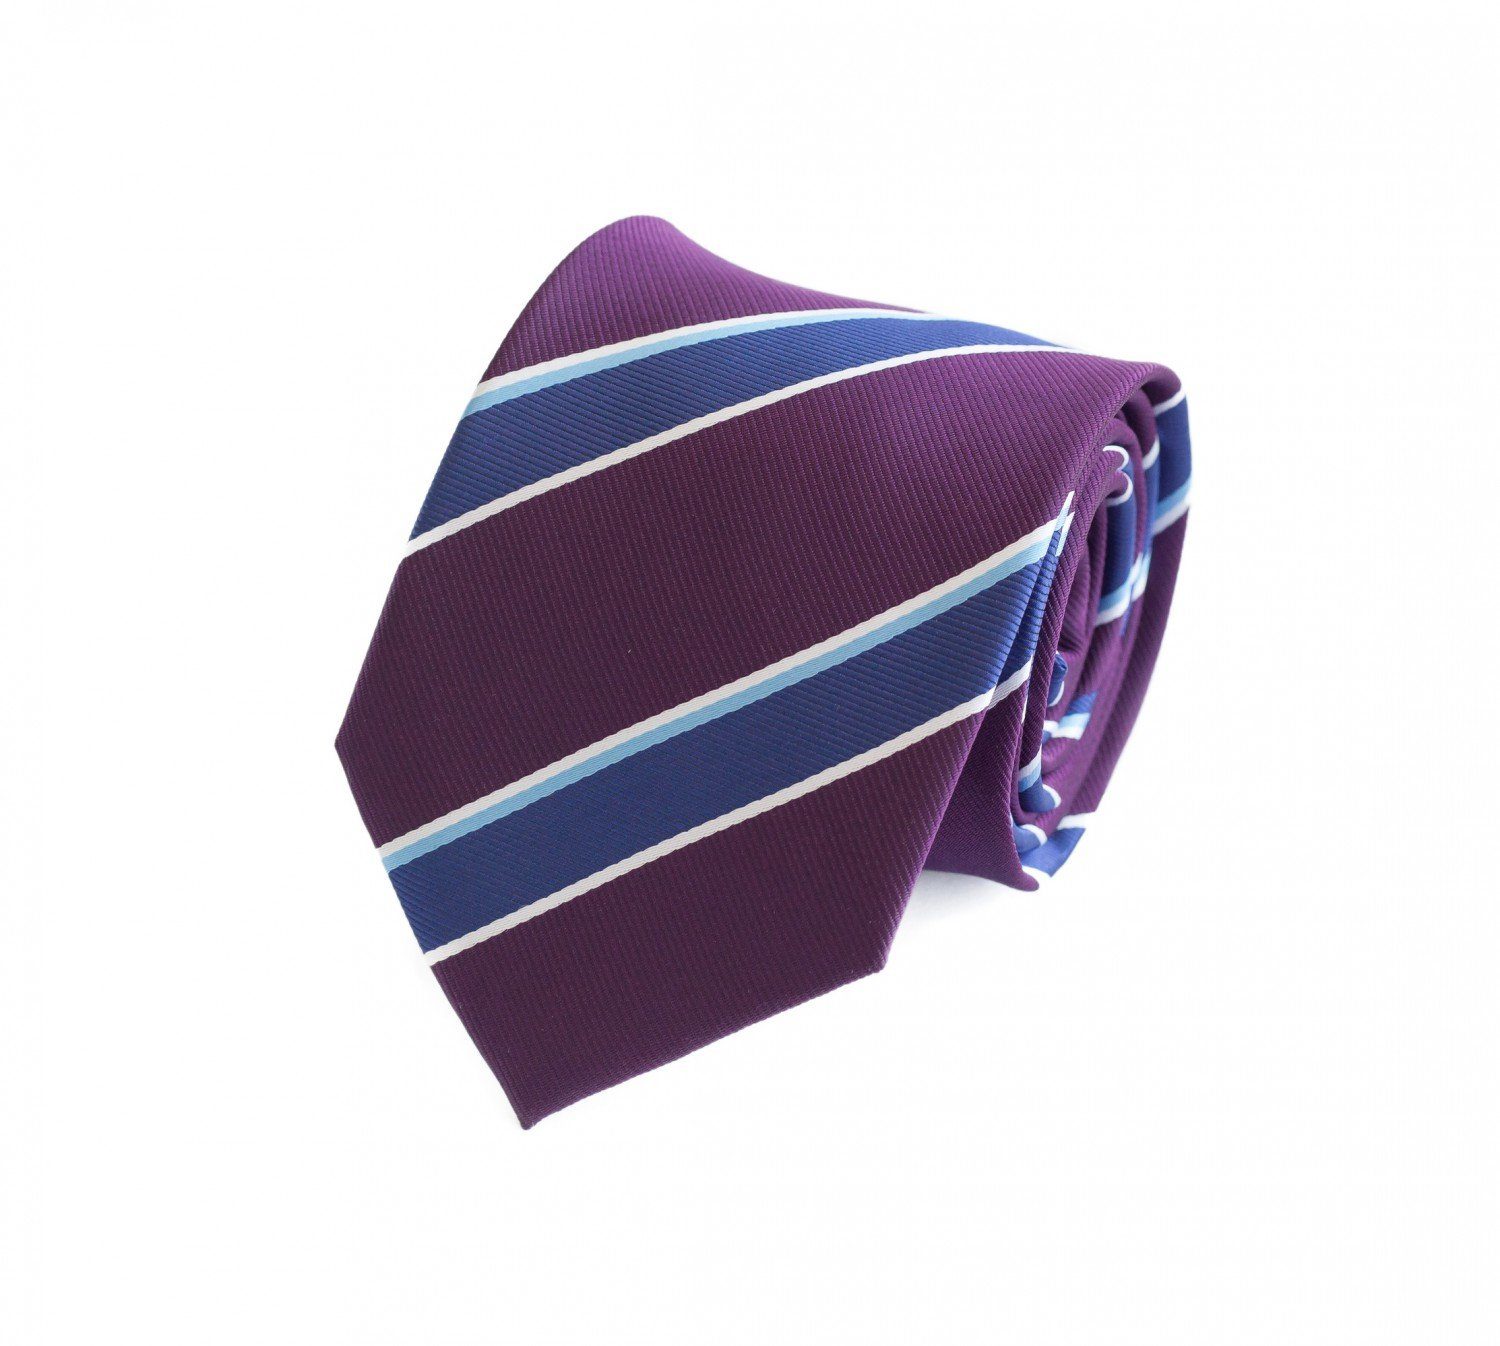 Fabio Farini Krawatte Herren Krawatten mit Farbton Lila - Schlips in 8cm Breite (ohne Box, Gestreift) Breit (8cm), Violett/Blau/Weiß